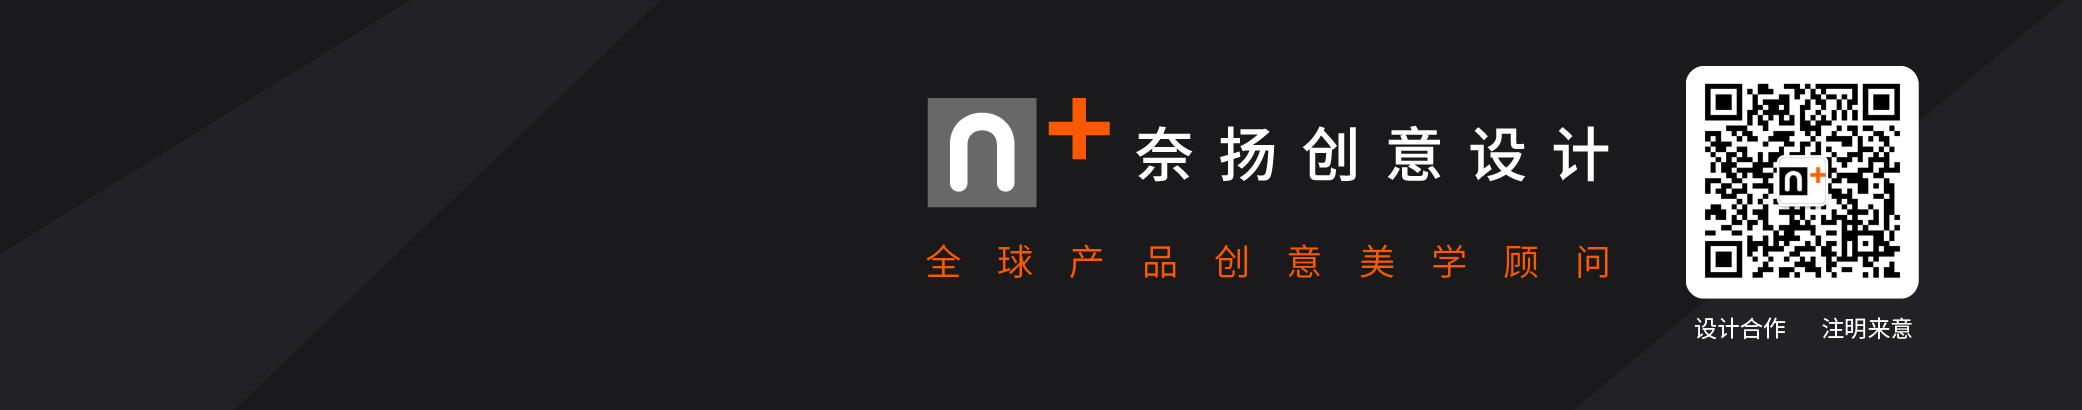 奈扬创意设计 （工业设计）'s profile banner